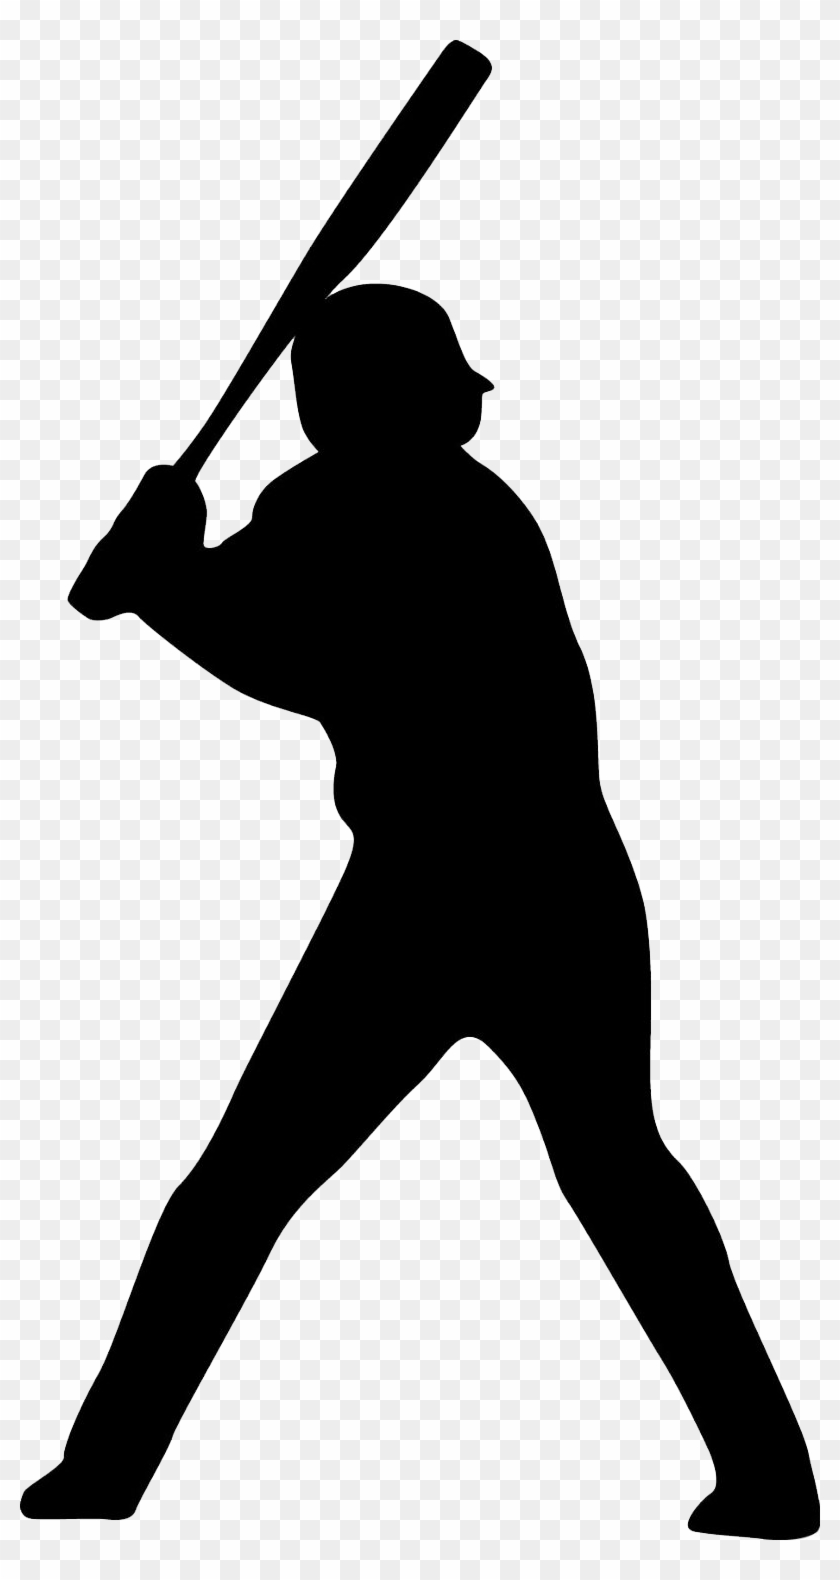 Baseball Player Icon - Baseball Player Silhouette #390552